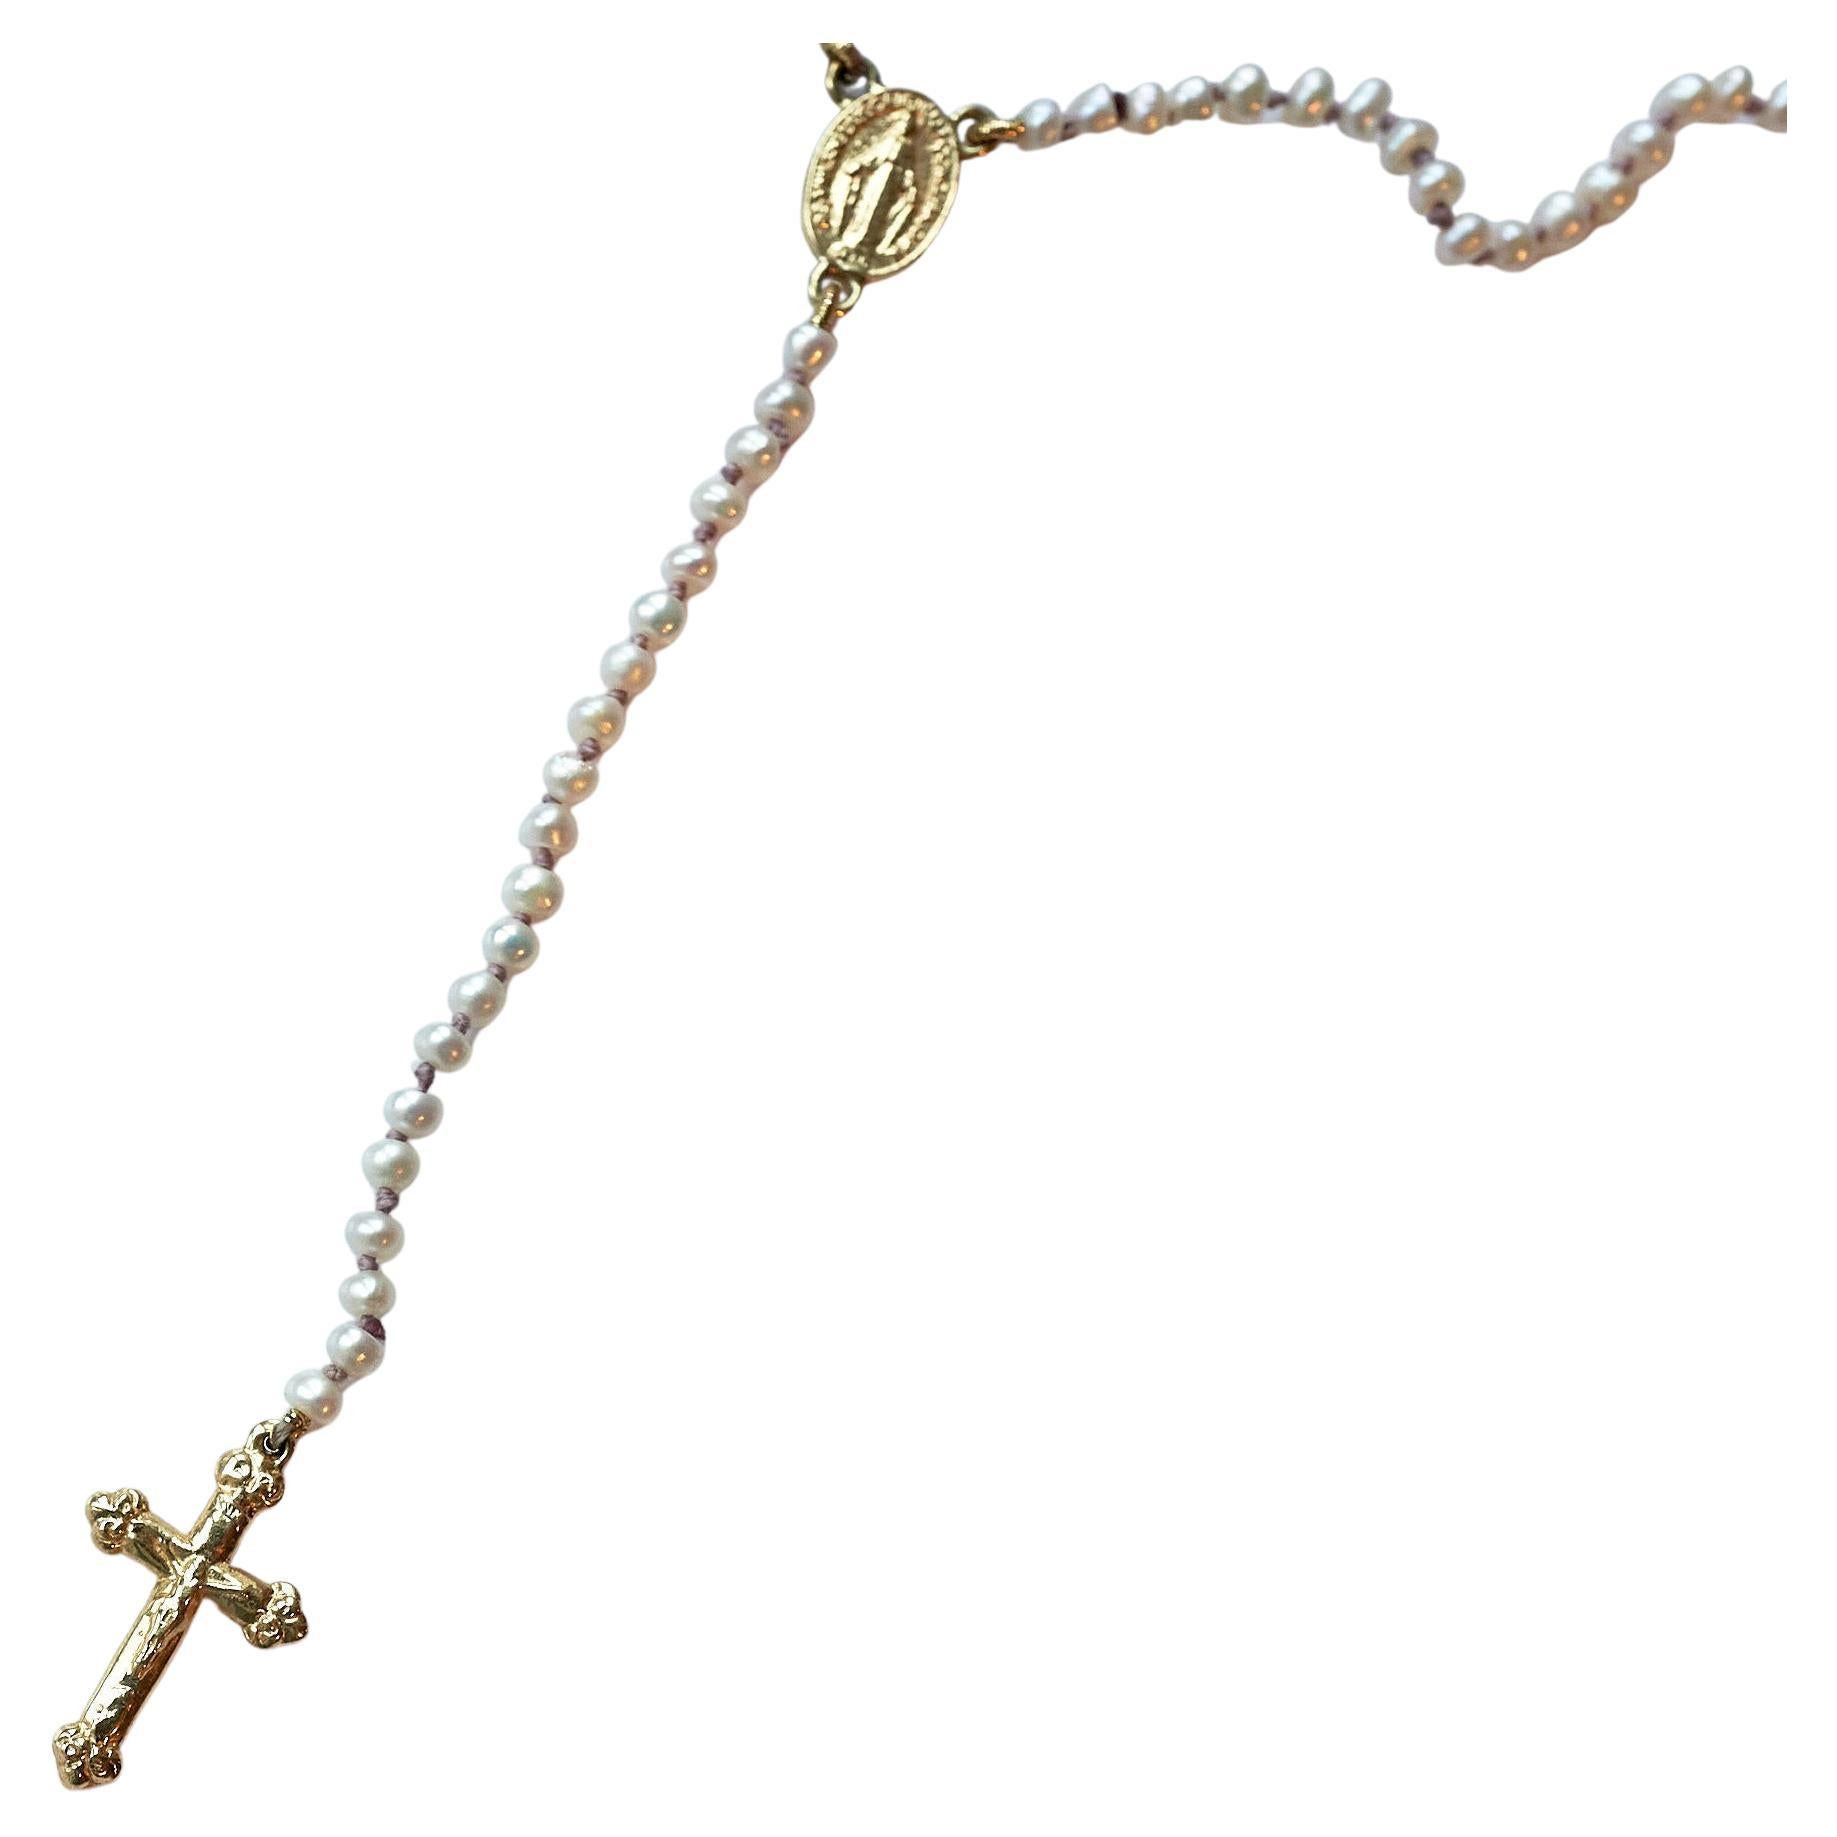 Rosario Weiß Perle Kruzifix Kreuz Jungfrau Maria 14k Gold religiöse Halskette

Symbole oder Medaillen können zu einem mächtigen Werkzeug in unserem Arsenal für das Spirituelle werden. 
Seit dem Altertum werden spirituelle Anhänger und religiöse